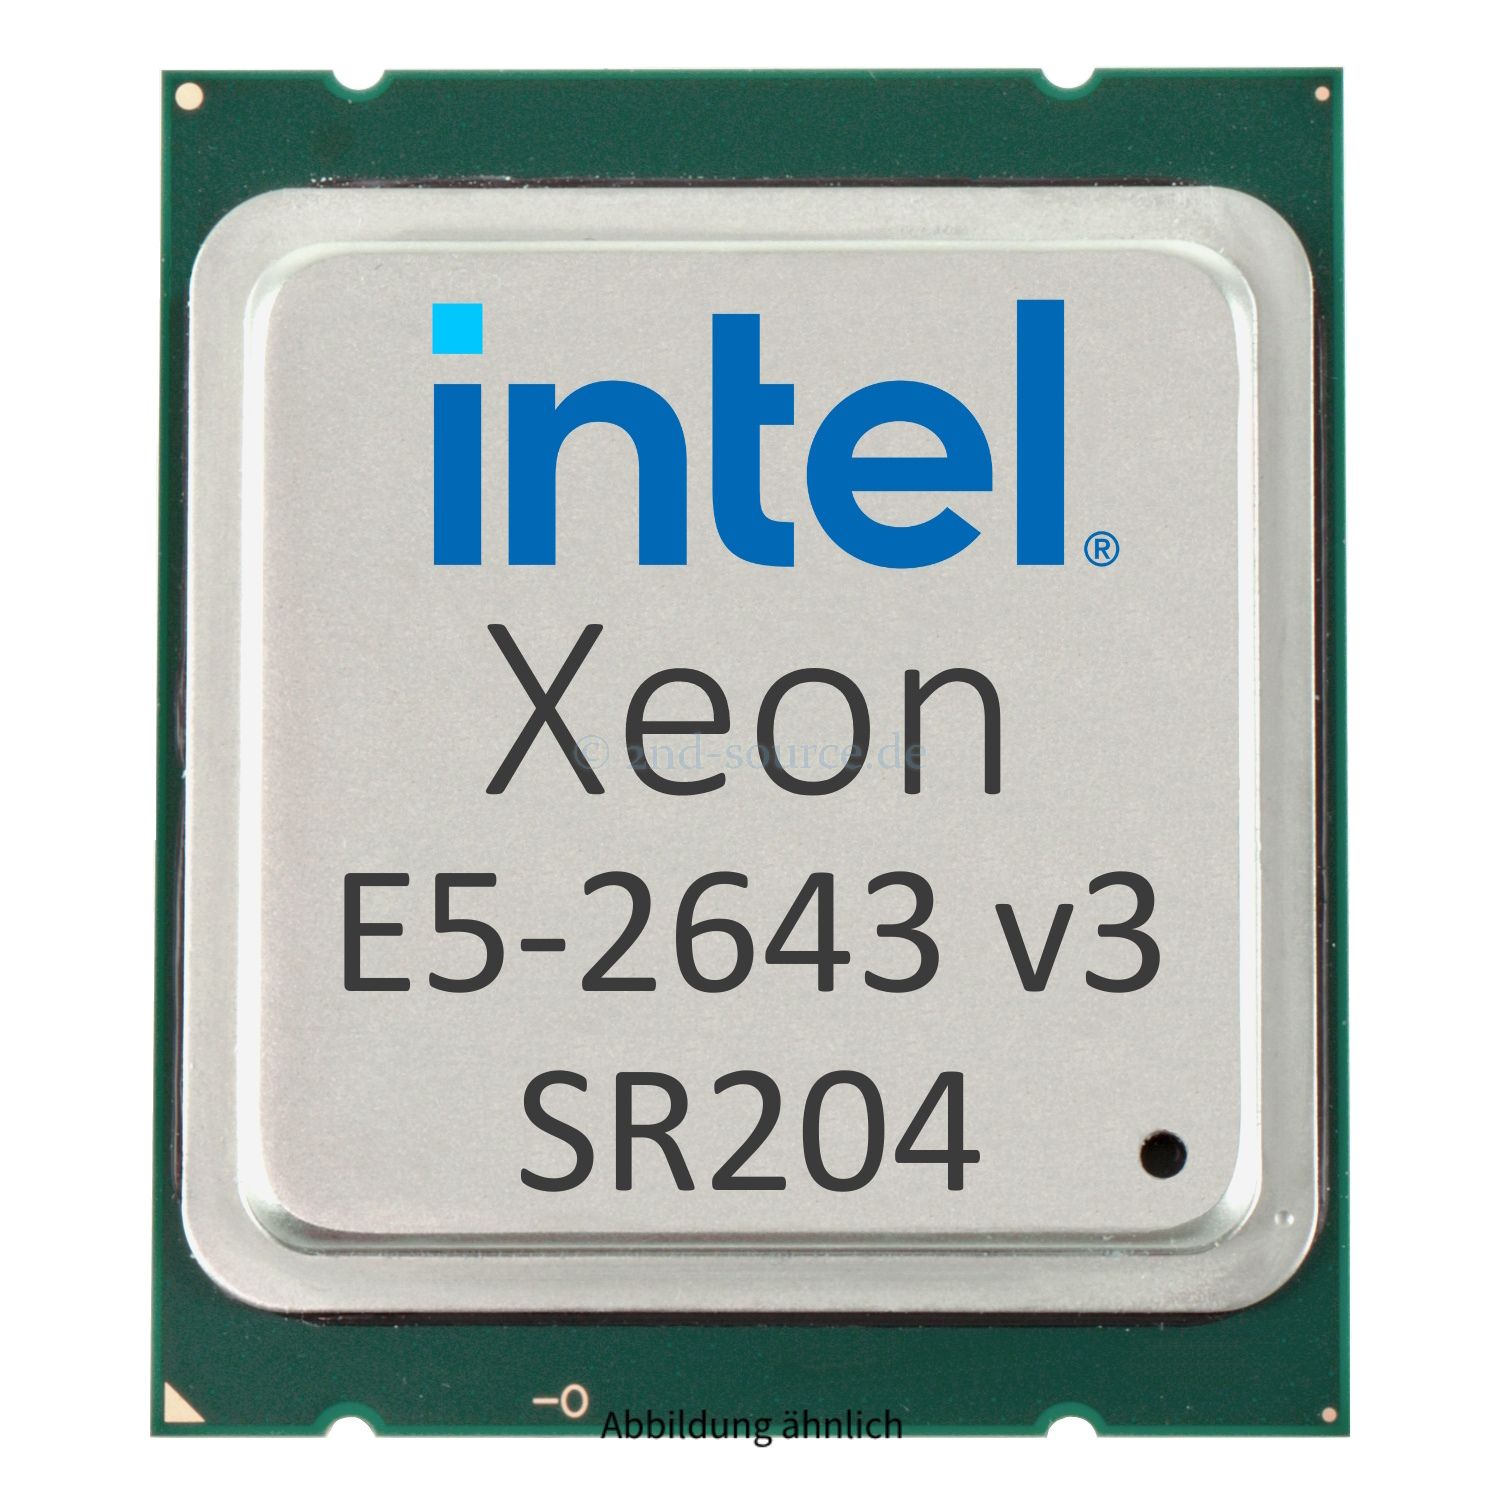 Intel Xeon E5-2643 v3 3.40GHz 20MB 6-Core CPU 135W SR204 CM8064401724501